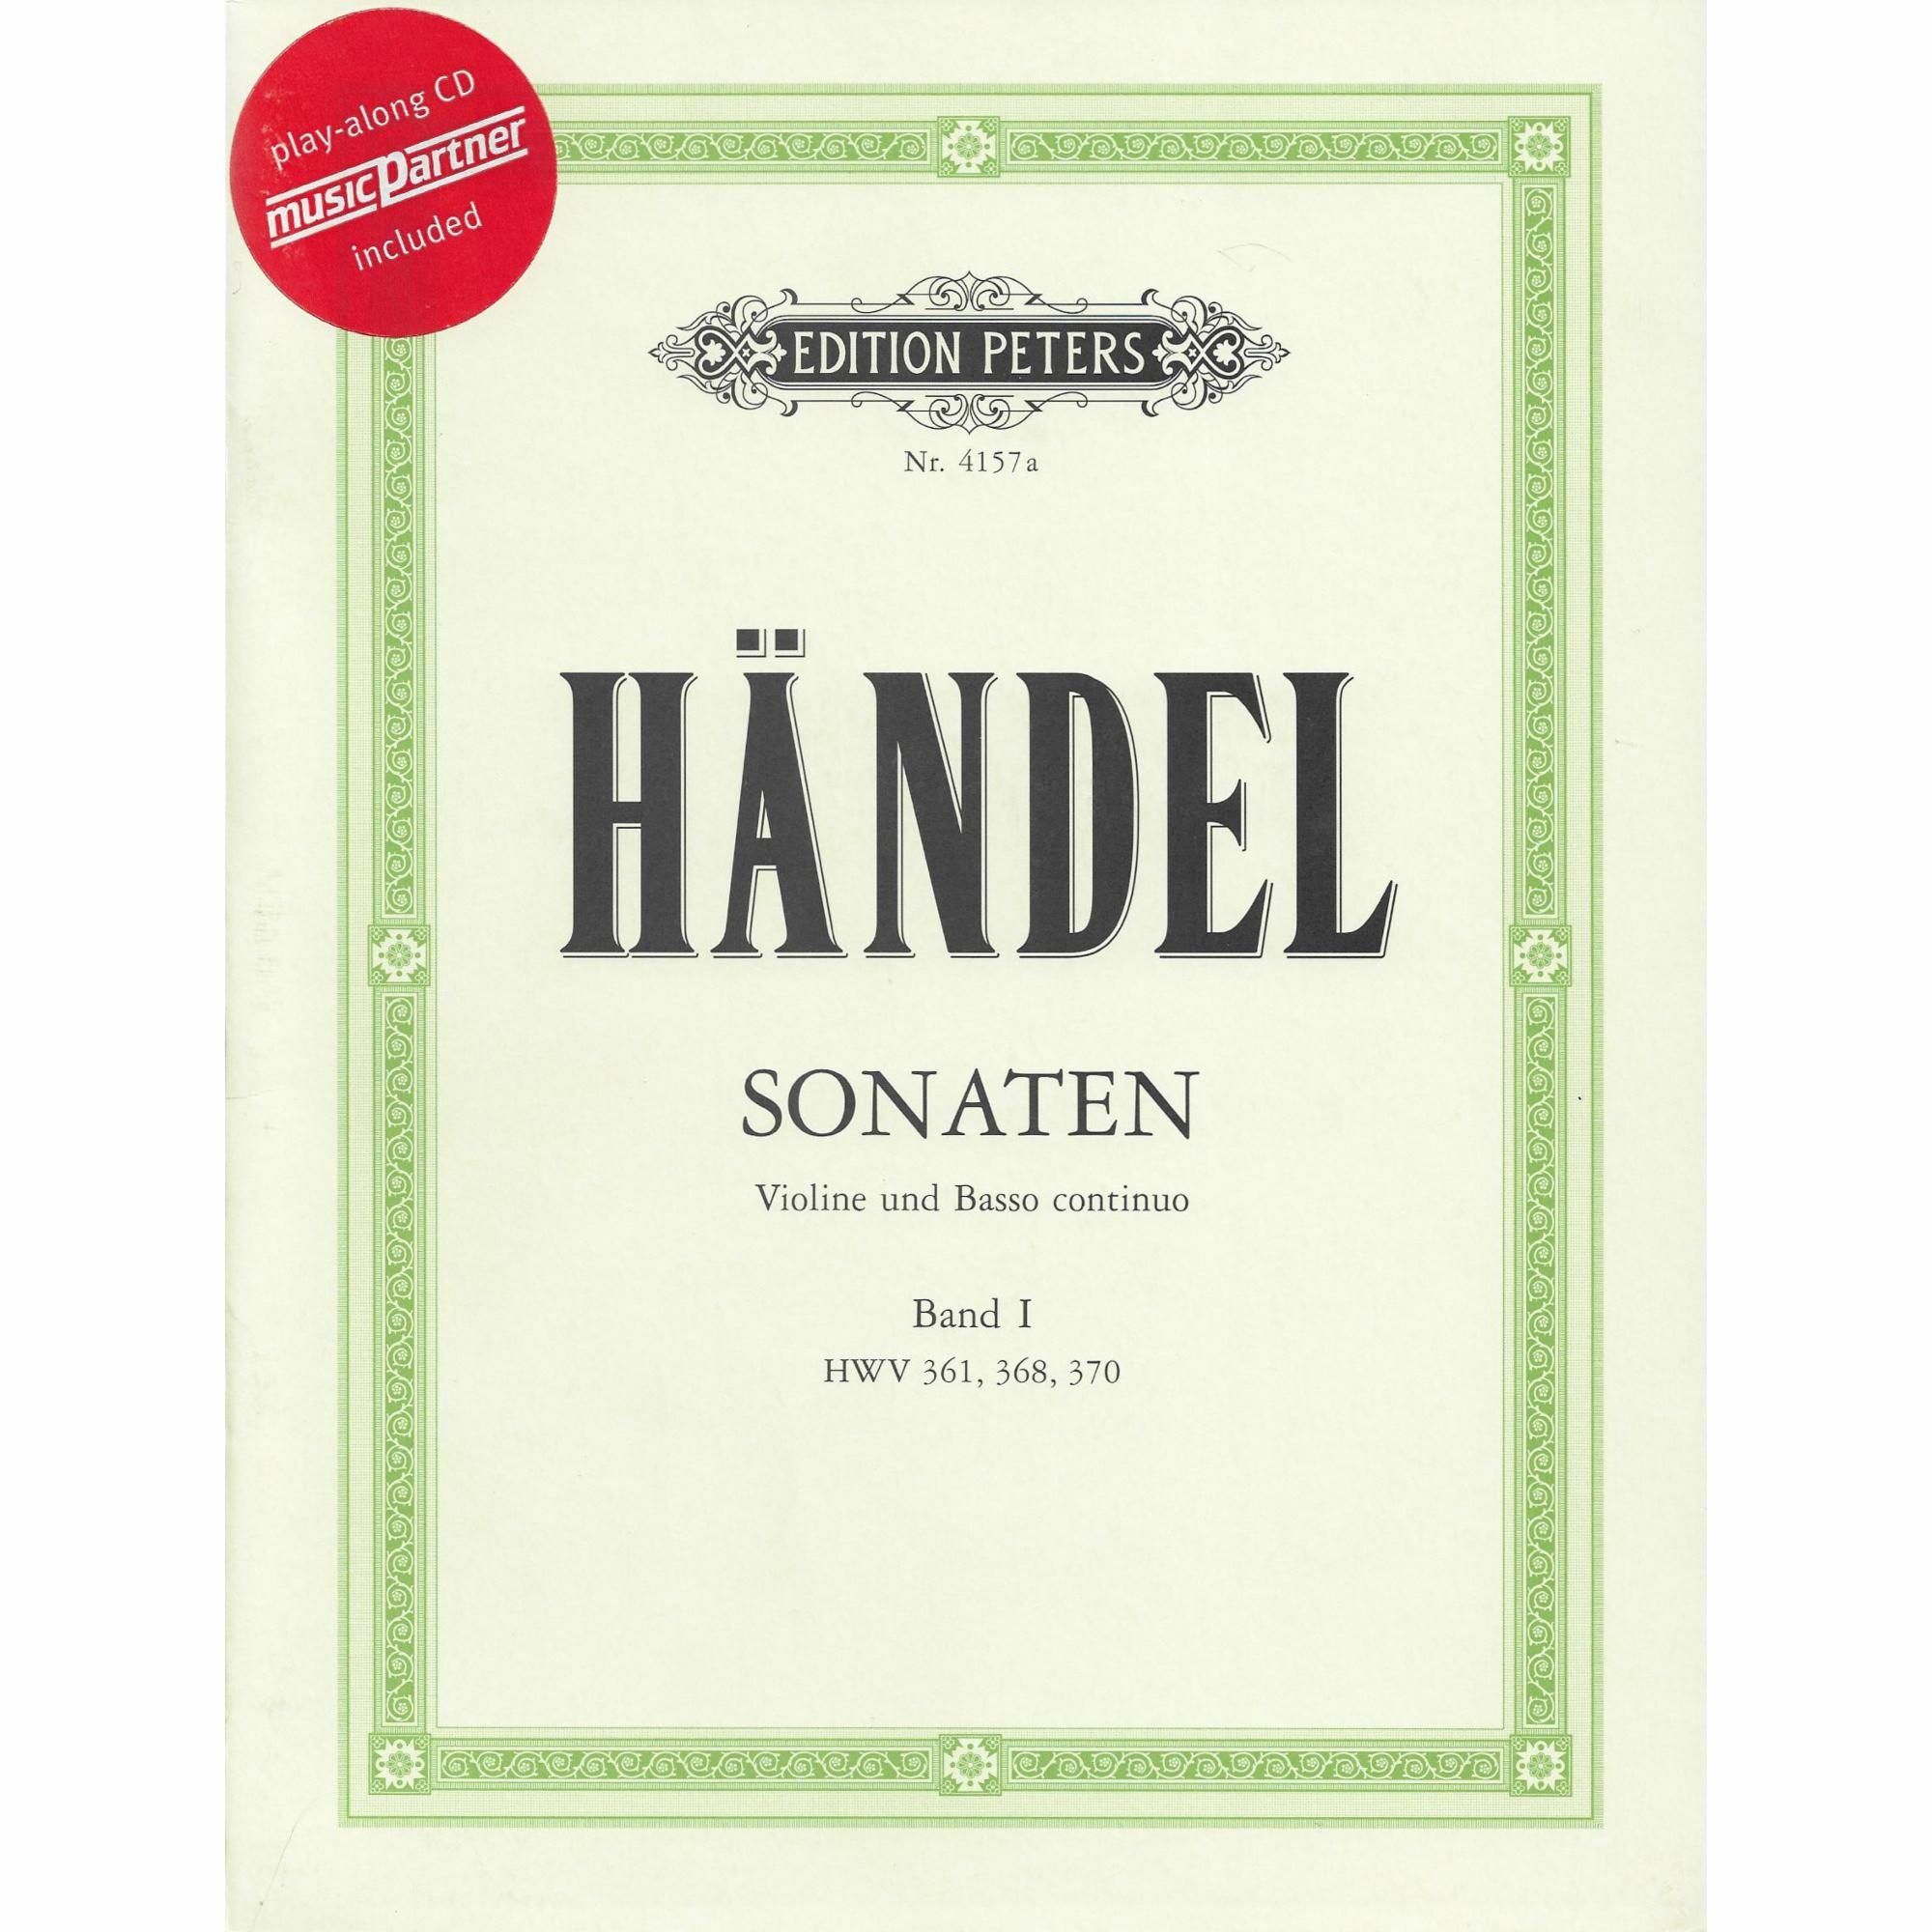 Handel -- Sonatas, Volume I for Violin and Basso Continuo